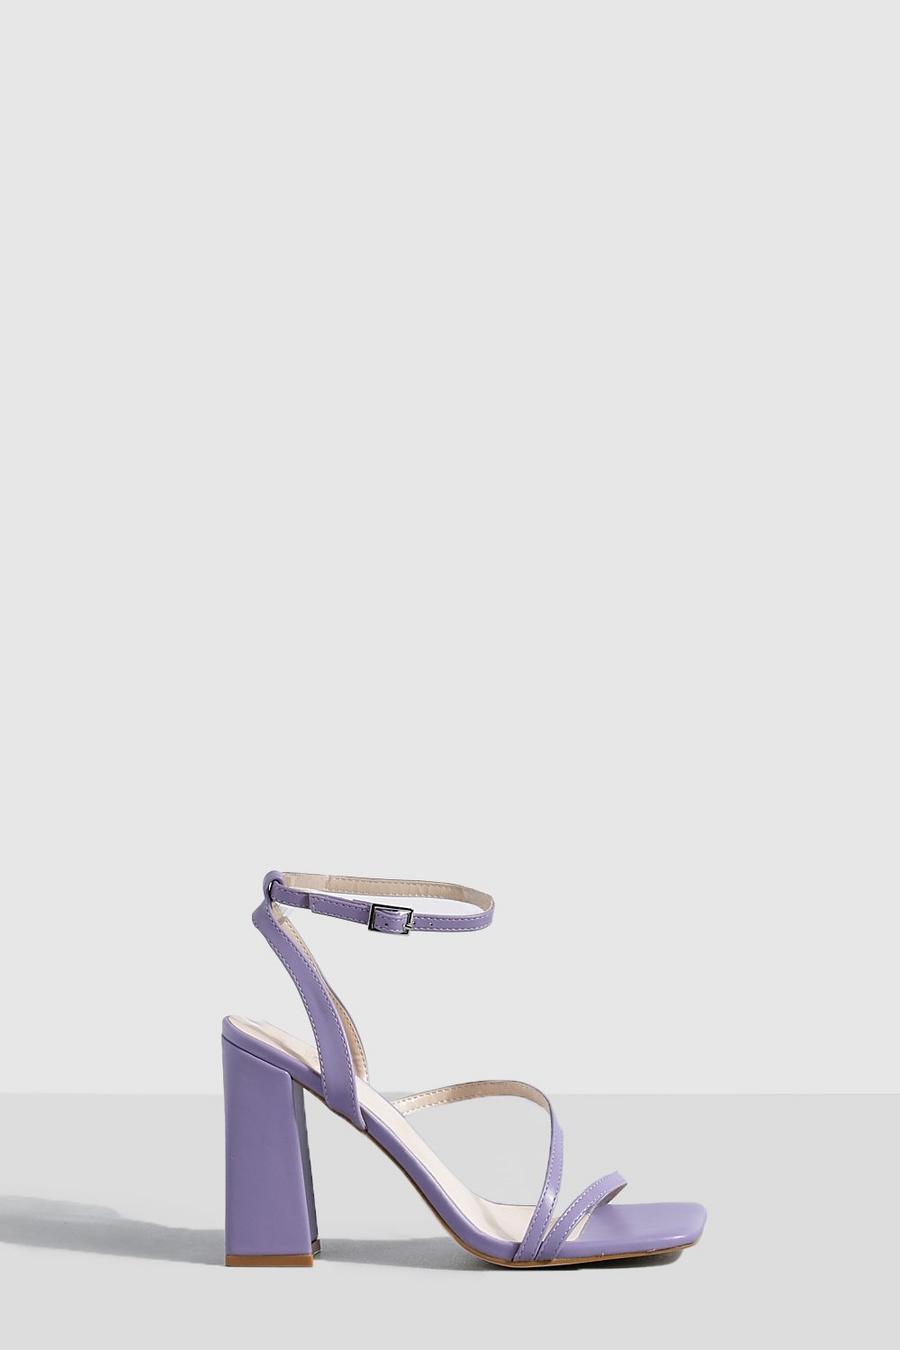 Chaussures asymétriques à talon carré, Purple